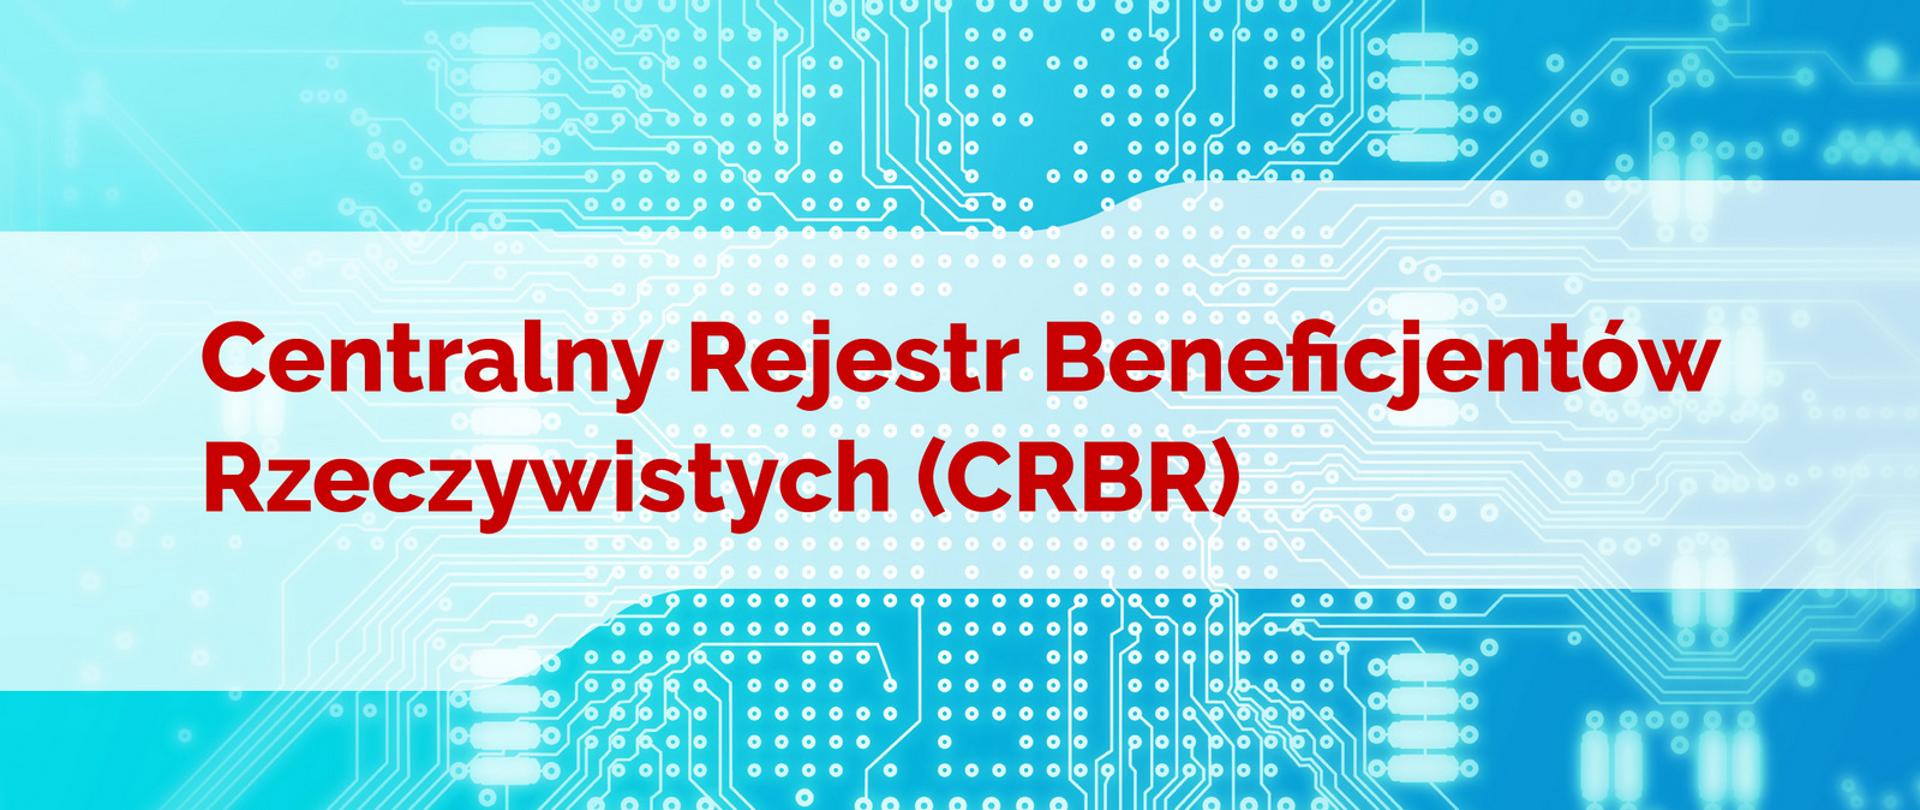 Na biało niebieskim tle napis Centralny Rejestr Beneficjentów Rzeczywistych (CRBR)